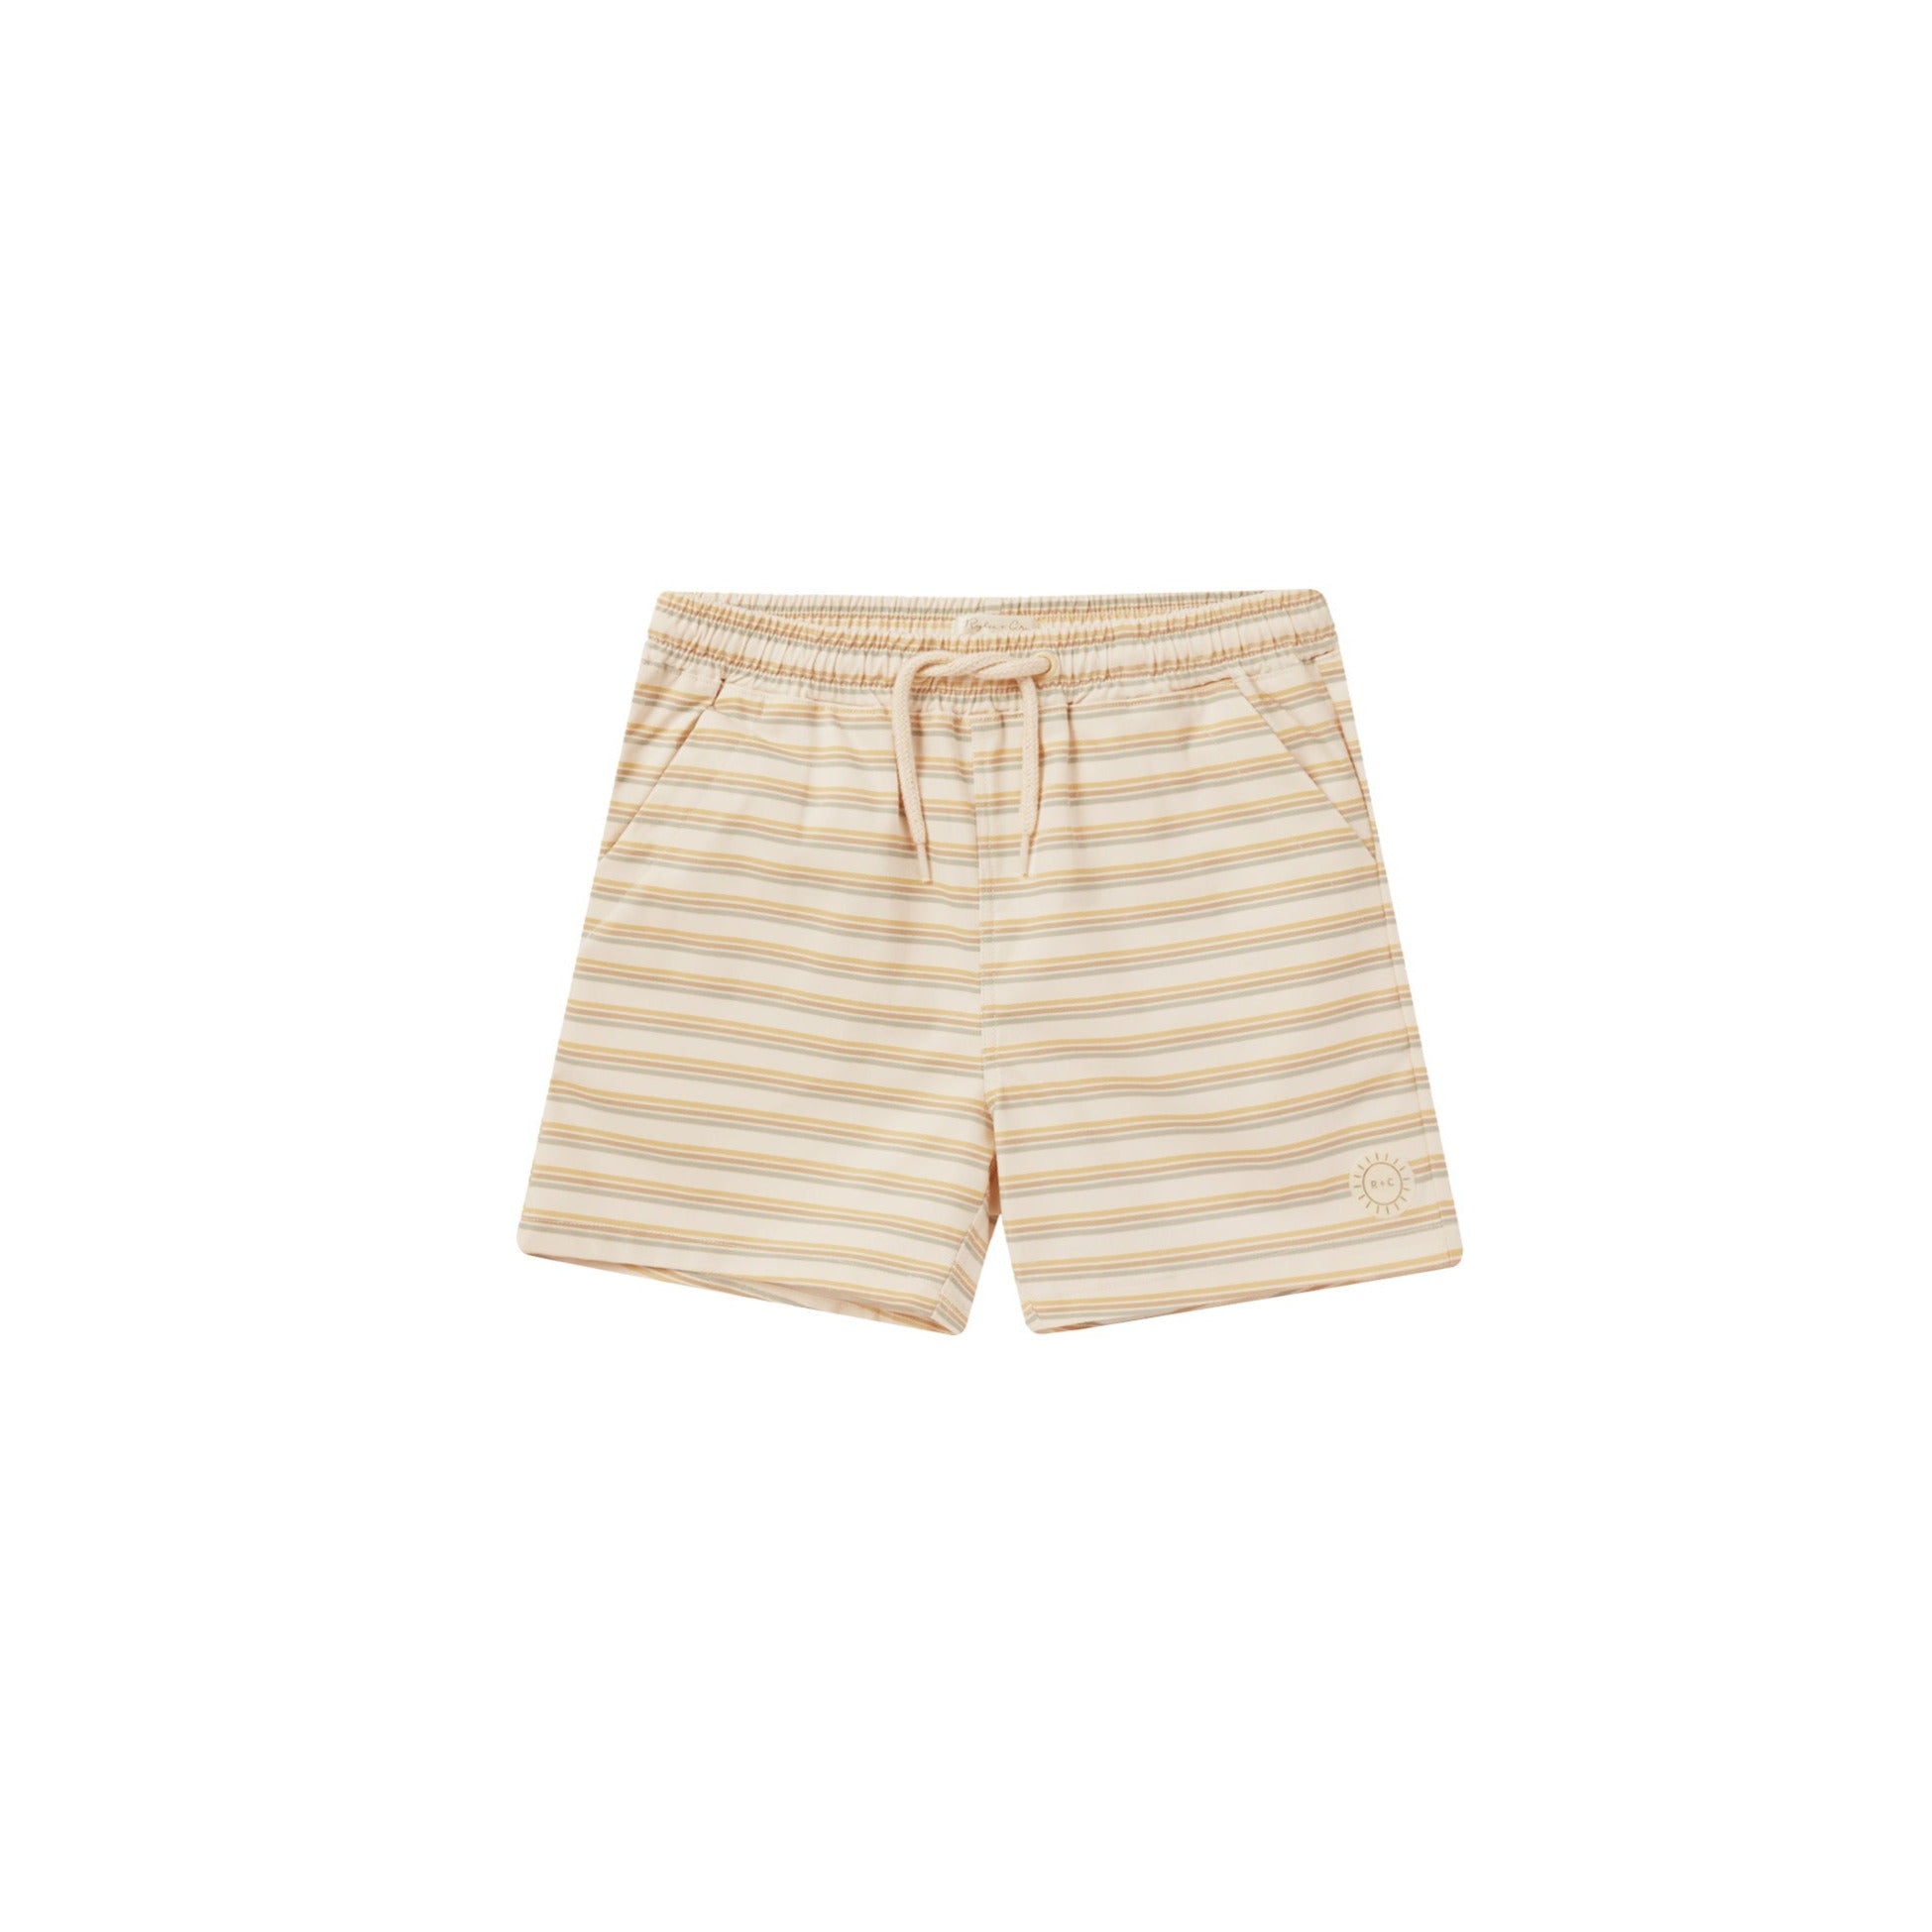 Kids Boys Girls UPF 50+ UV Protection Swimwear Navy White Stripe Shorts –  Jody and Lara